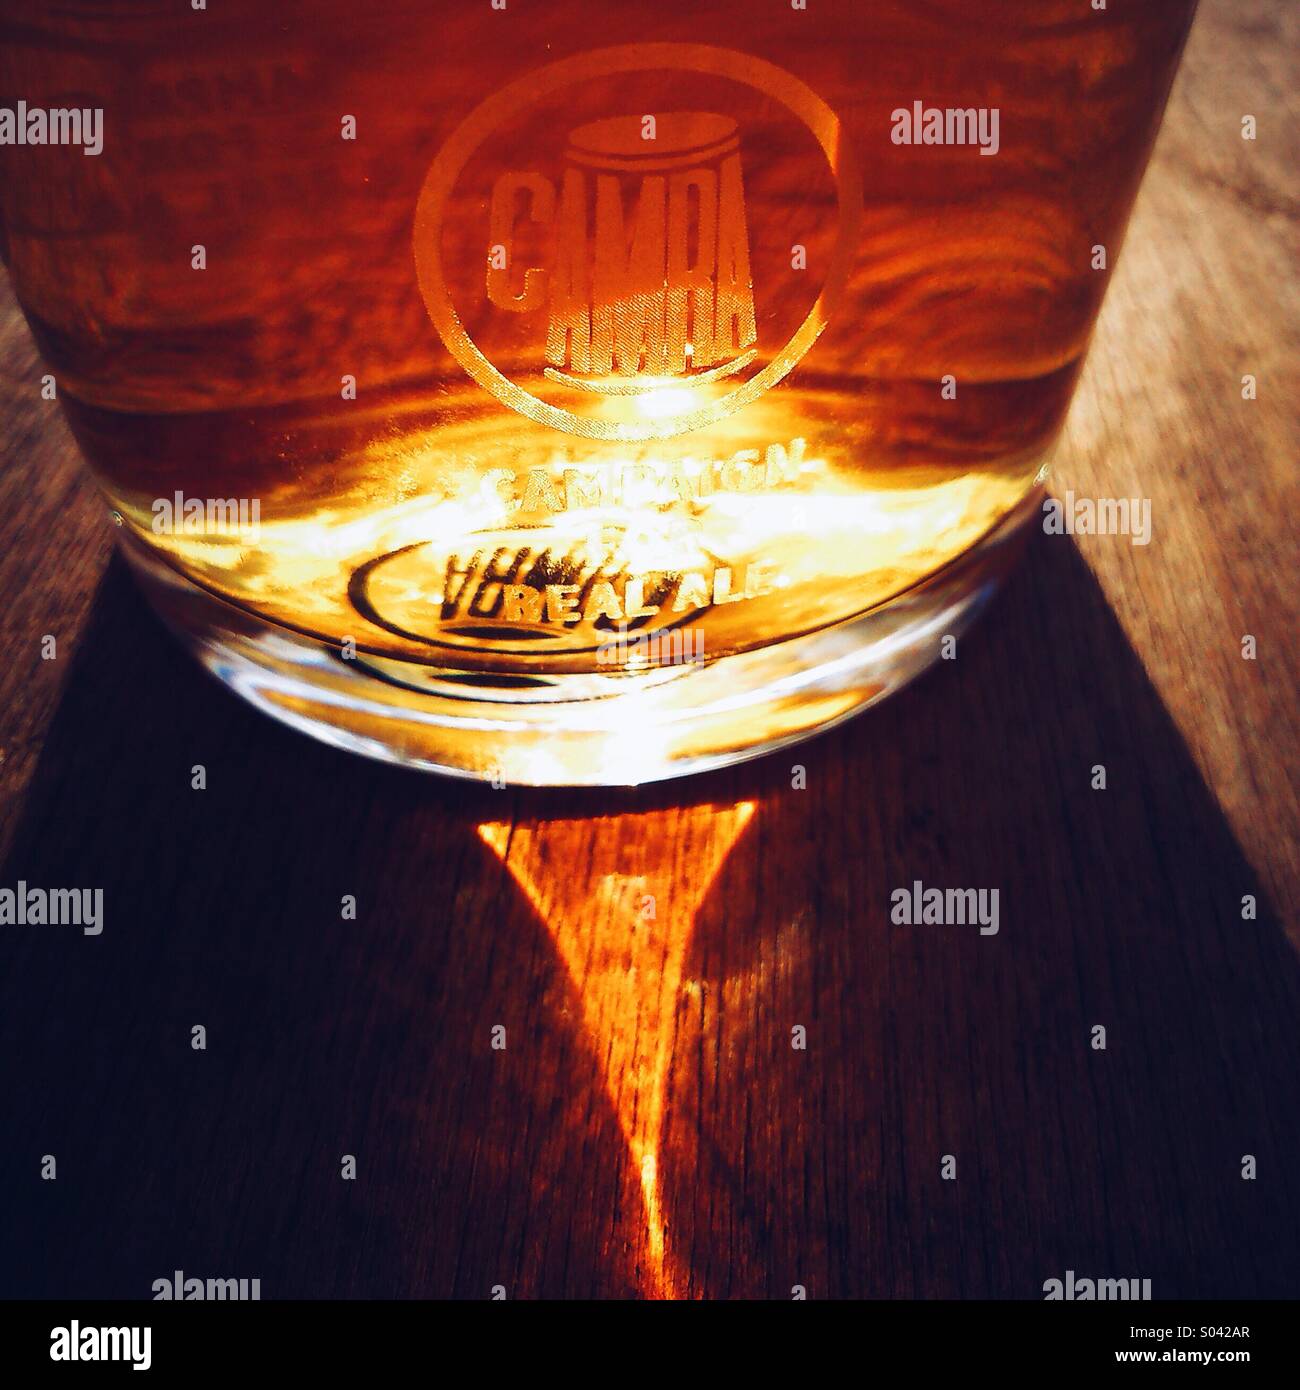 Pinta de cerveza con logo CAMRA en sunshine Foto de stock